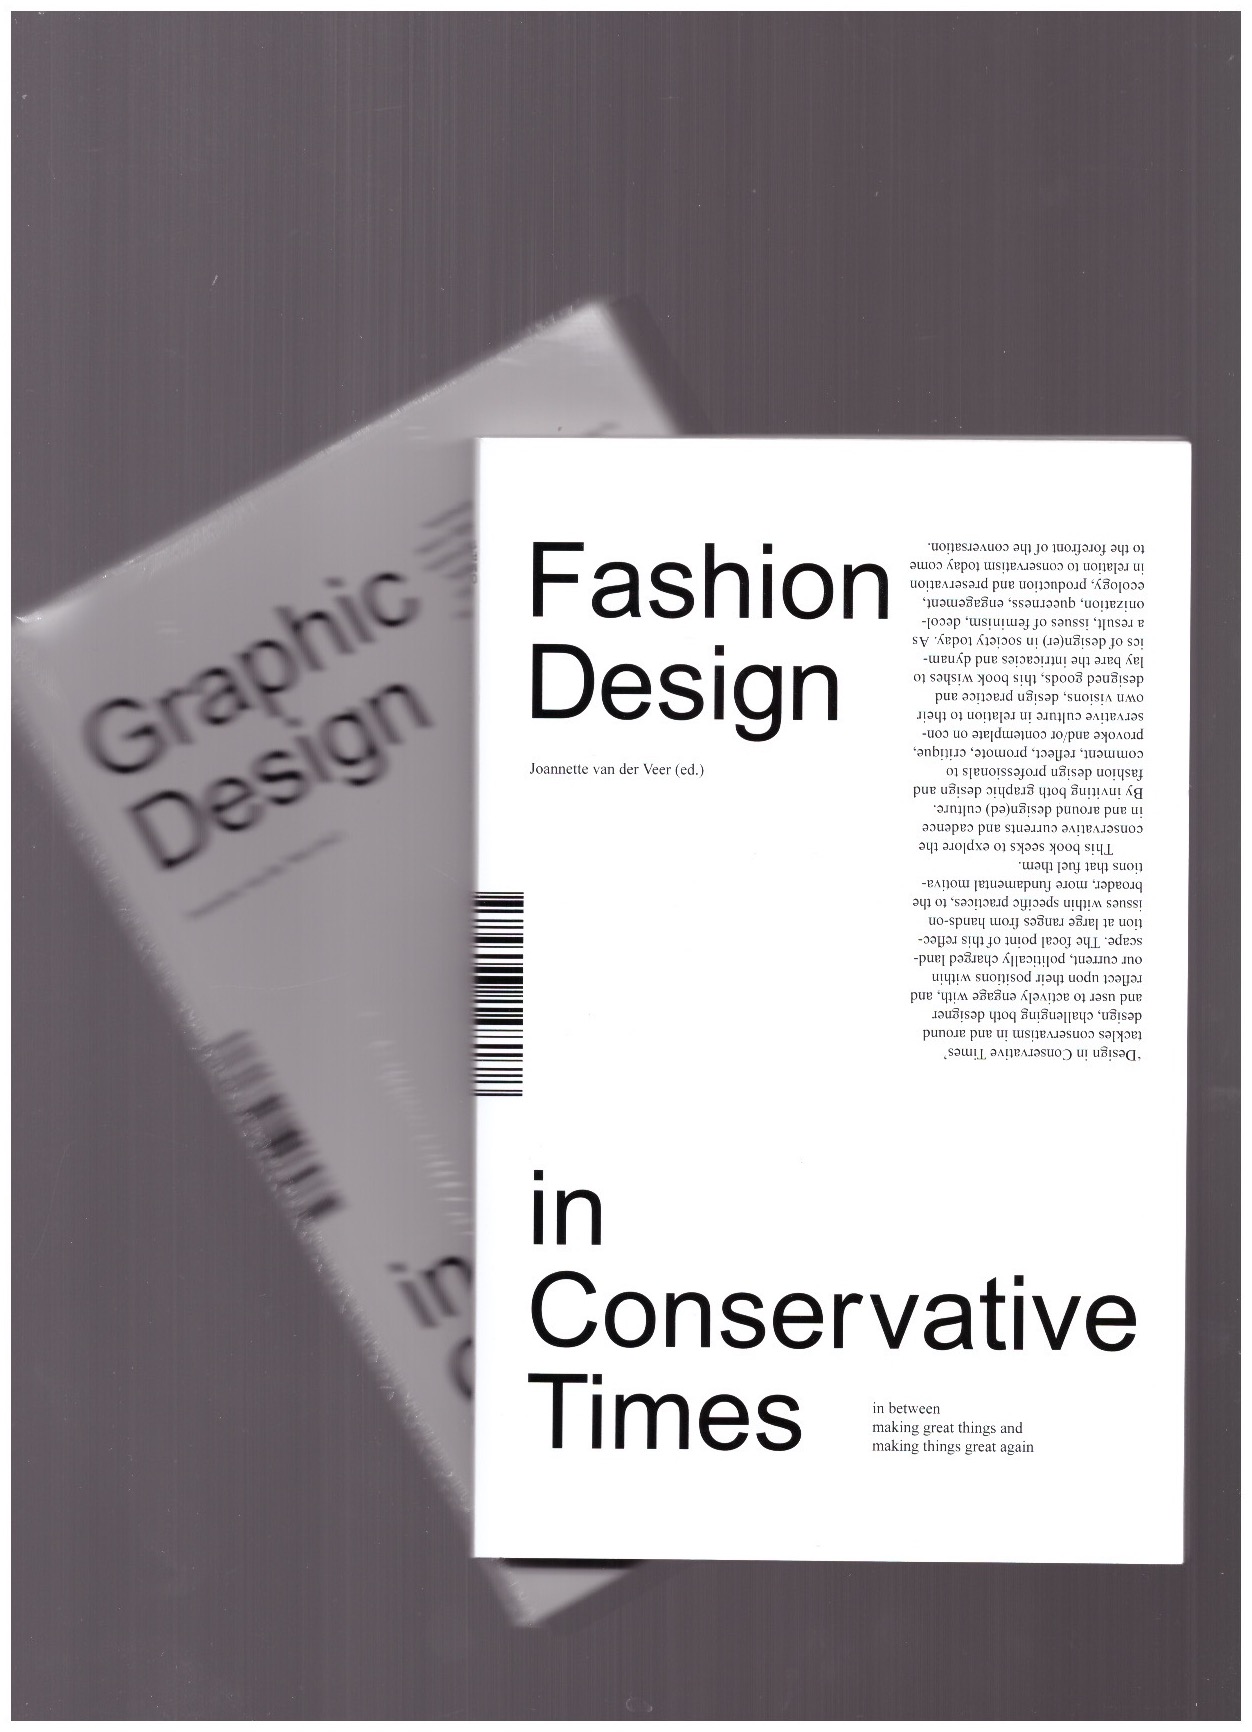 VAN DER VEER, Jeanette (ed.) - Graphic/Fashion Design in Conservative Times